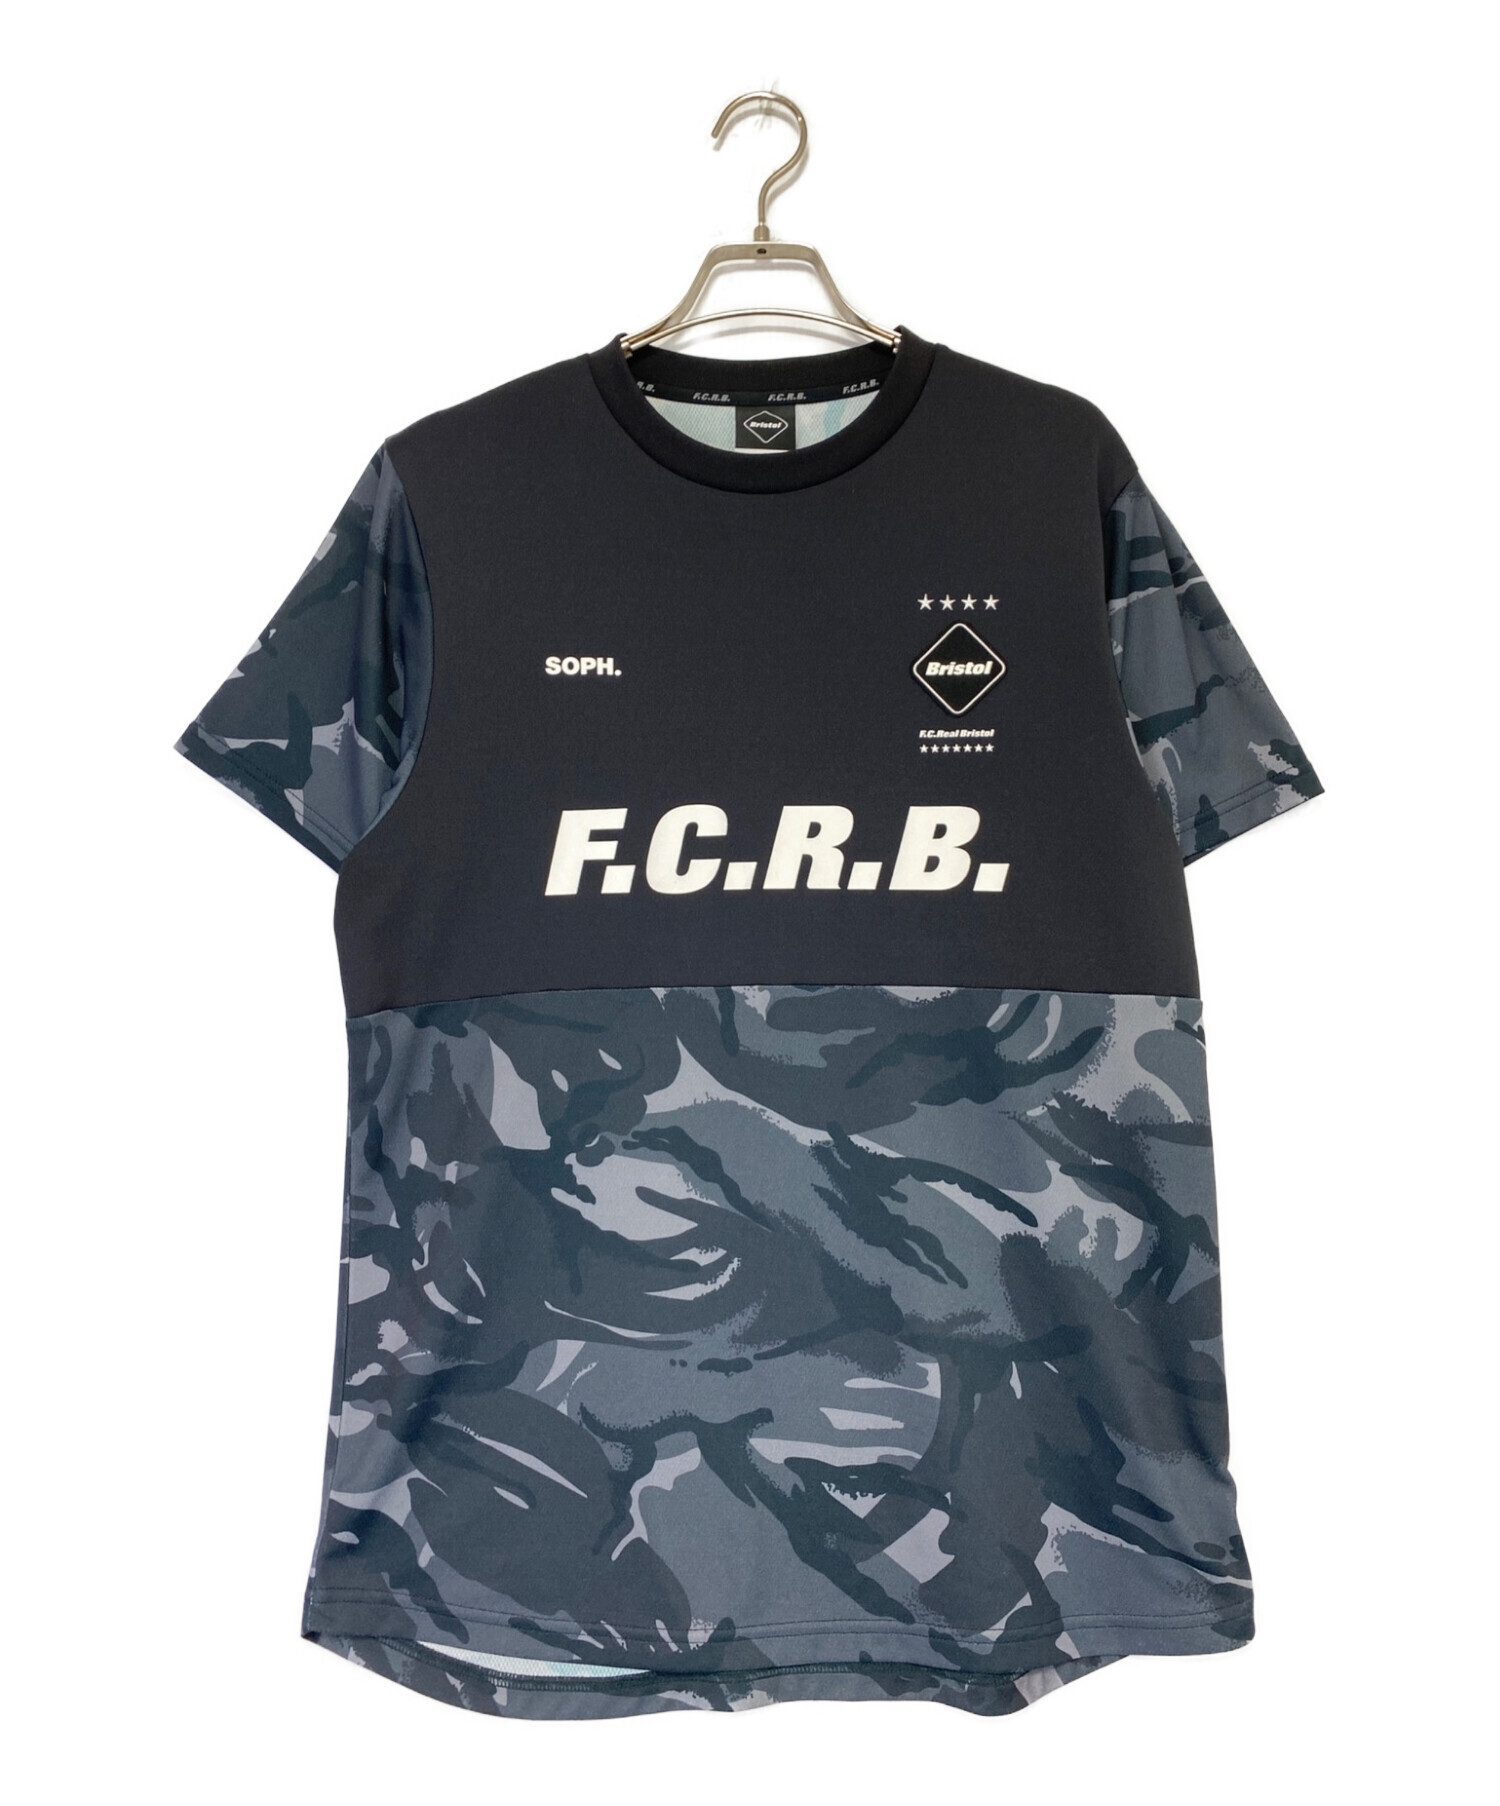 F.C.R.B. (エフシーレアルブリストル) S/S PRE MATCH TOP ブラック サイズ:S